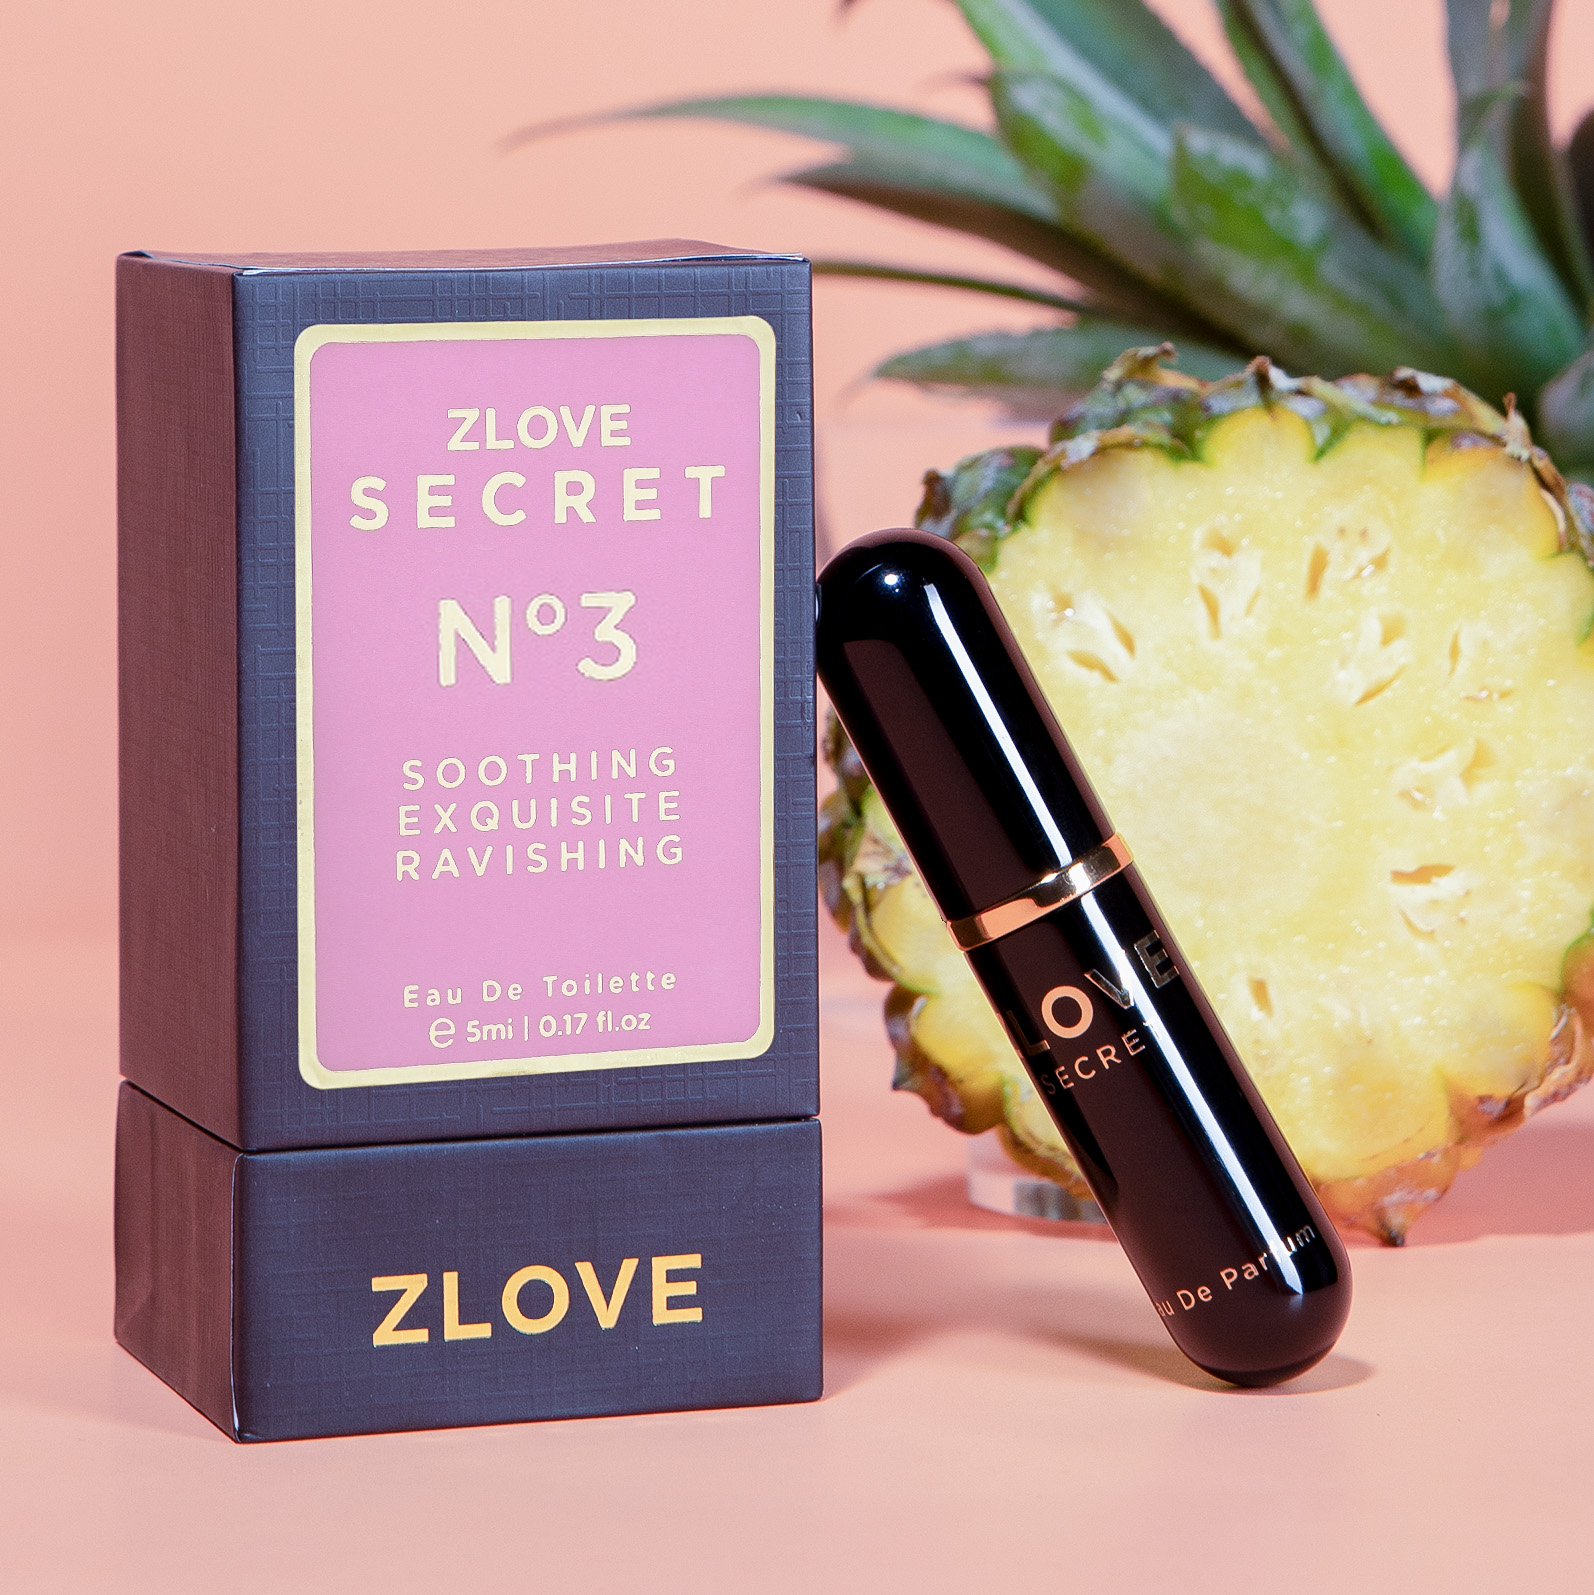 Nước hoa vùng kín nữ cao cấp chính hãng Zlove Secret 5ml với hương thơm ngọt ngào, quyến rũ, nữ tính